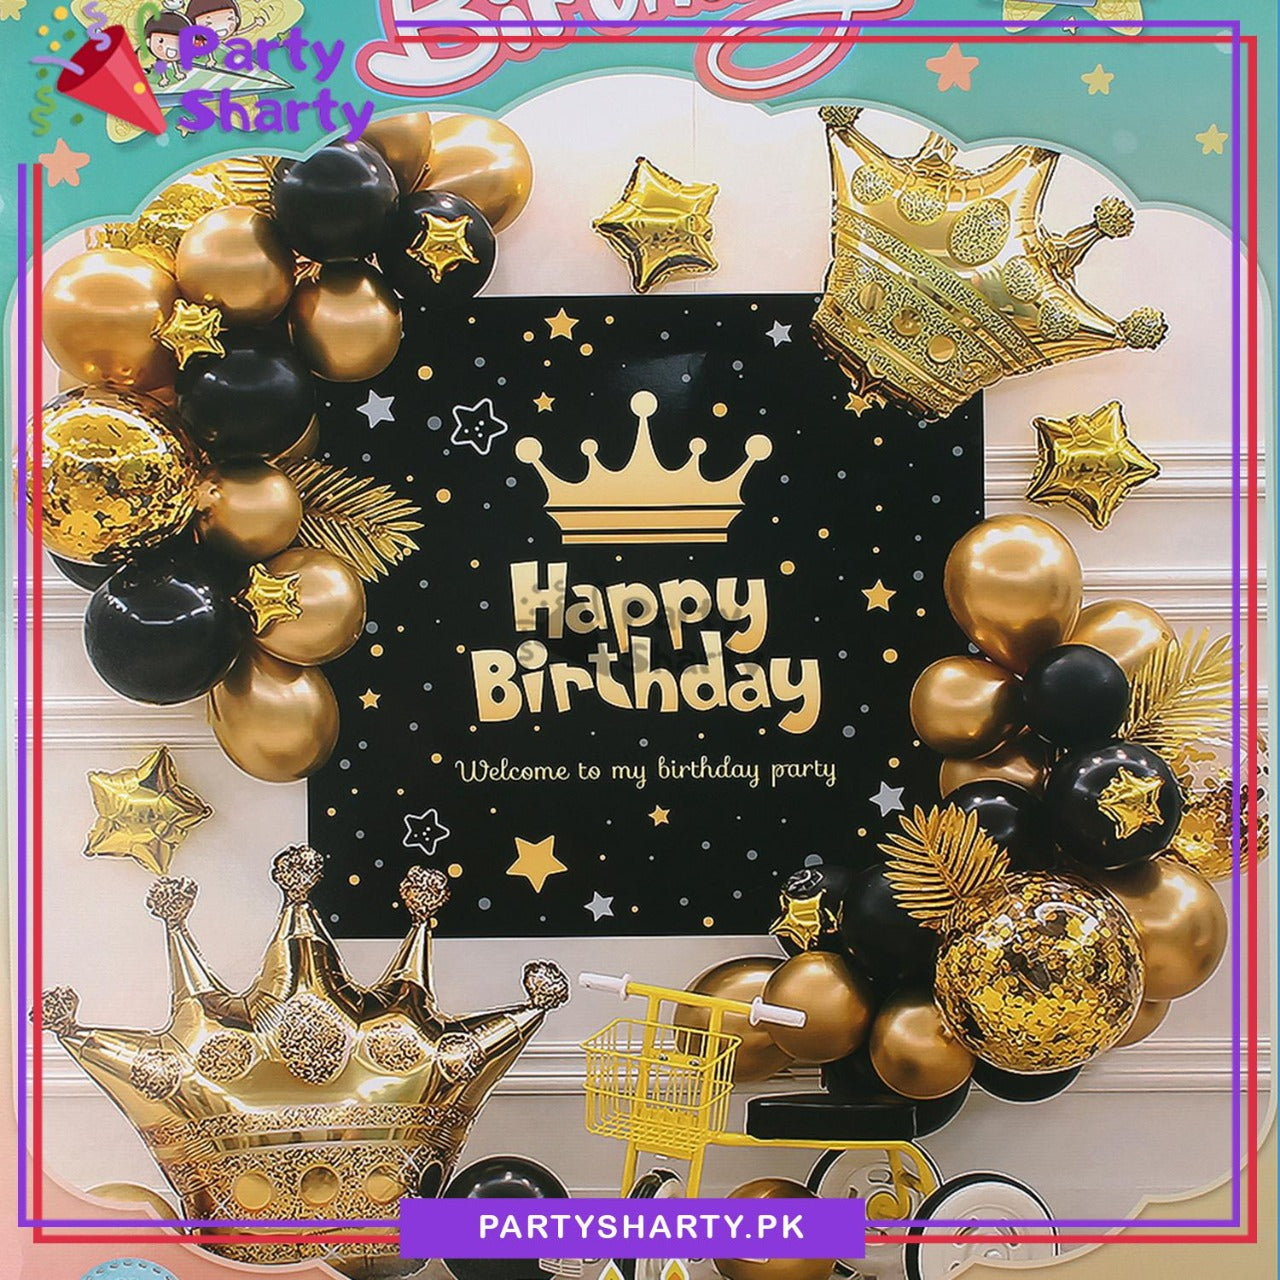 D-2 Happy Birthday Stylish Black & Golden Theme Set For Birthday Decoration and Celebration